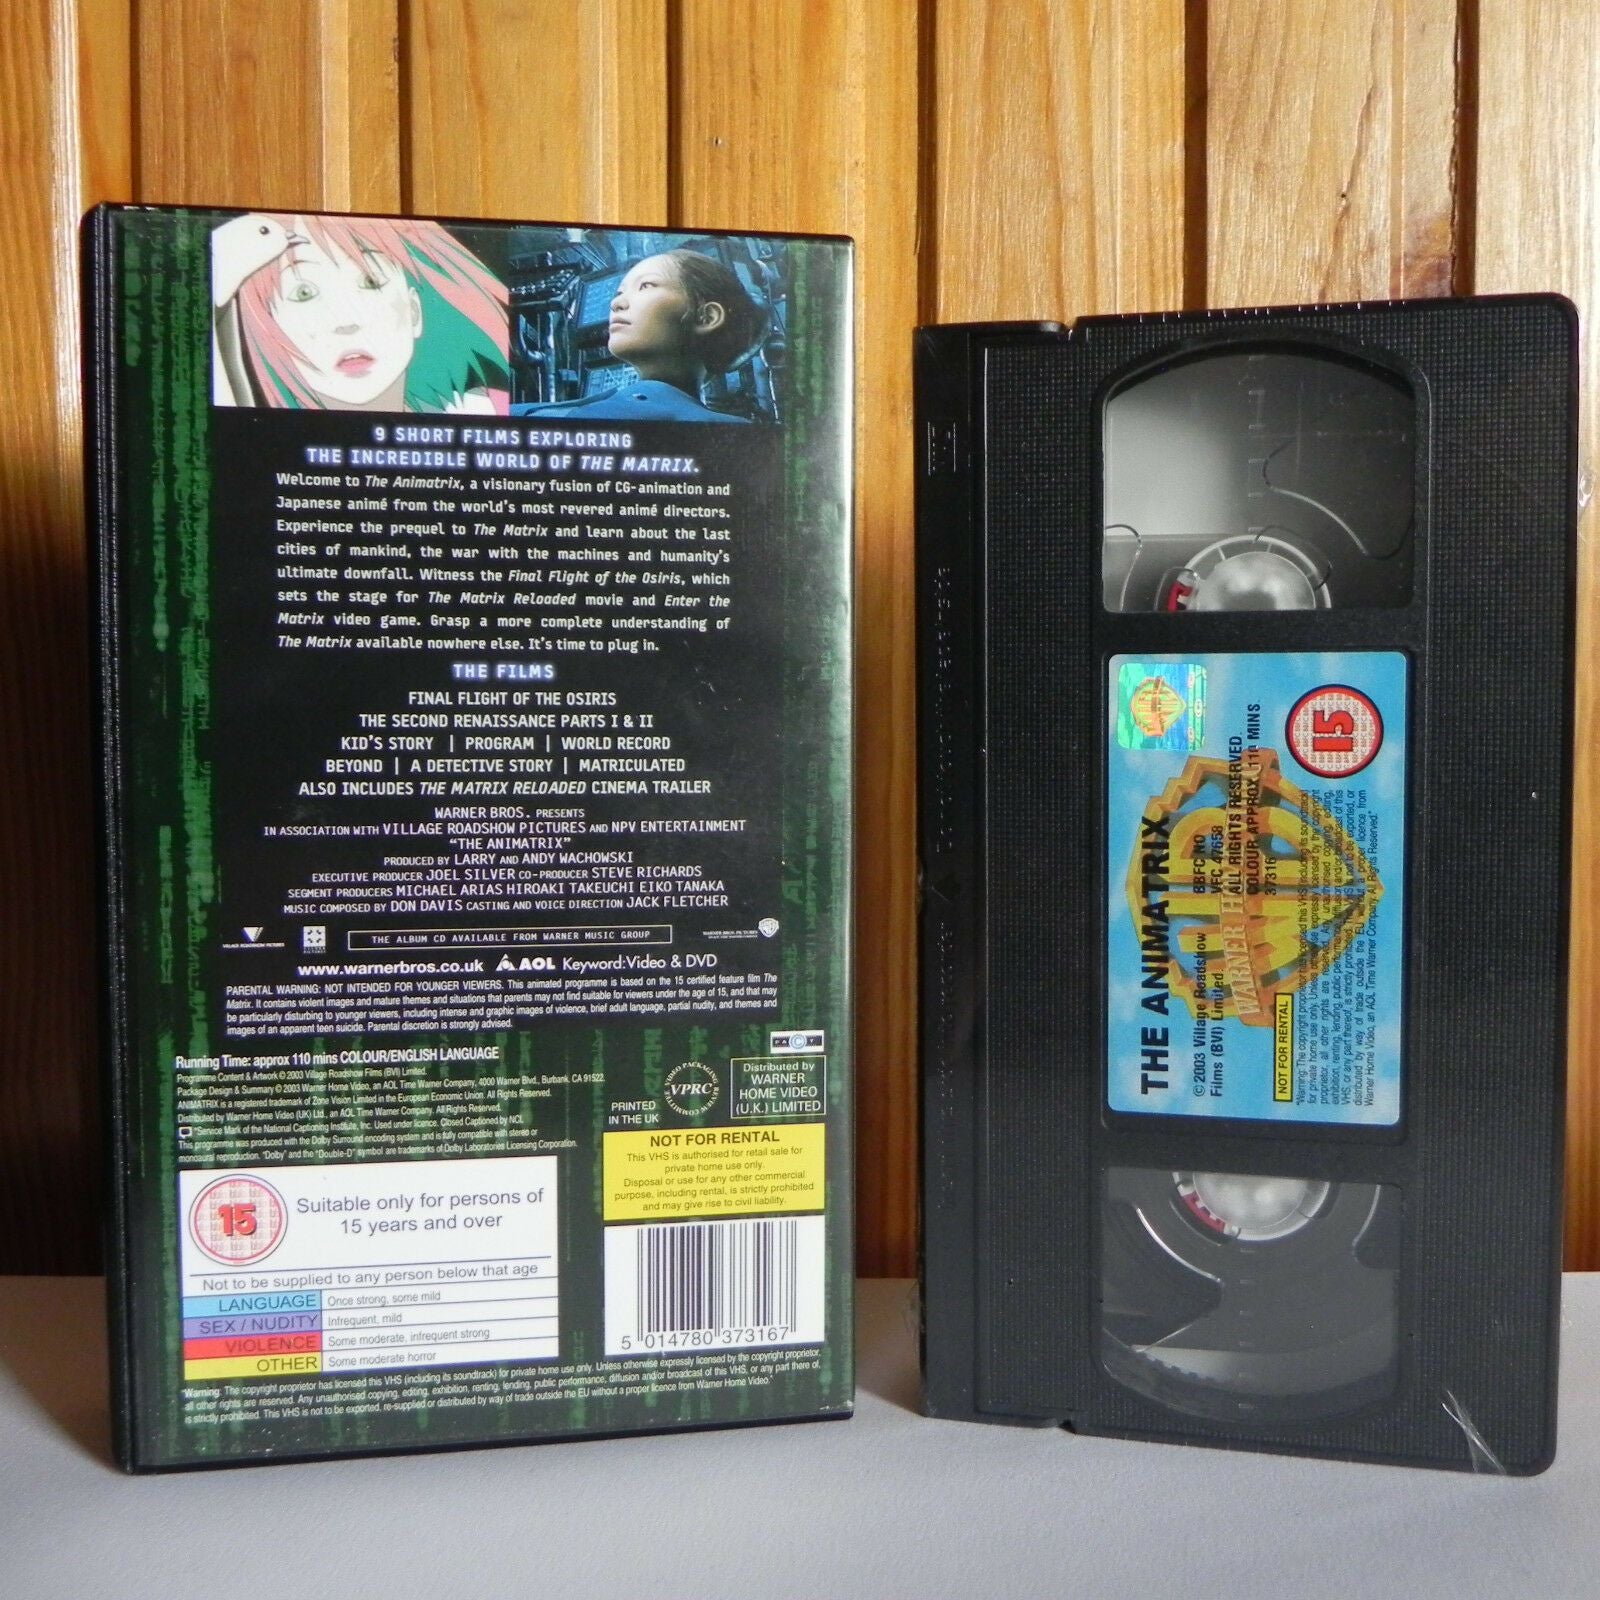 アニマトリックス: Animatrix - Widescreen Edition - (9) Short Film - Wachowski - Pal VHS-